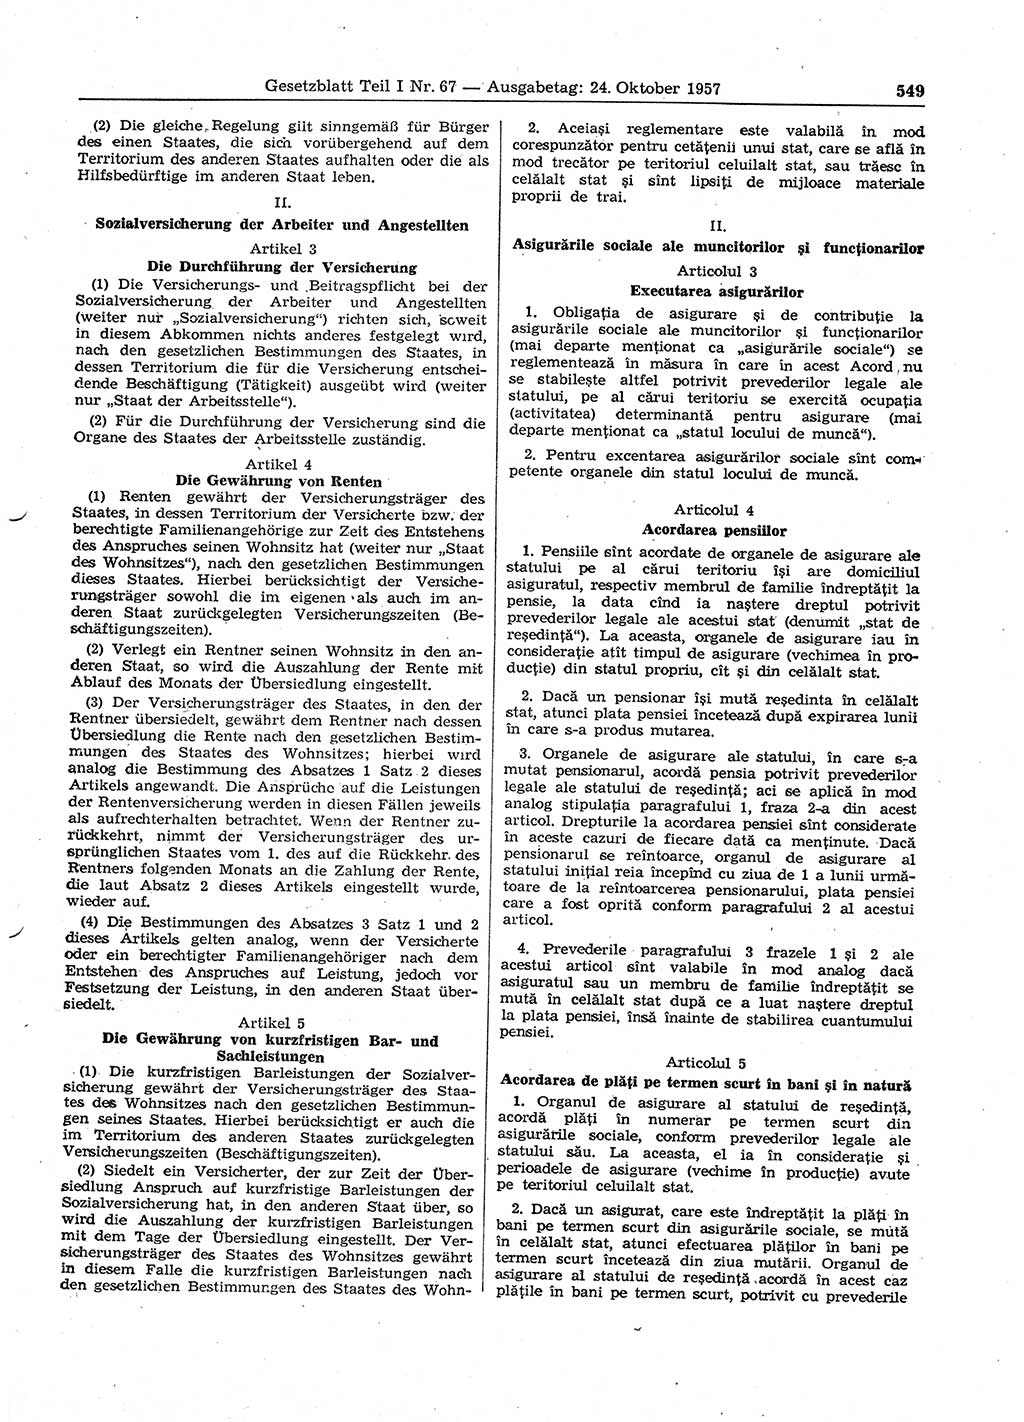 Gesetzblatt (GBl.) der Deutschen Demokratischen Republik (DDR) Teil Ⅰ 1957, Seite 549 (GBl. DDR Ⅰ 1957, S. 549)